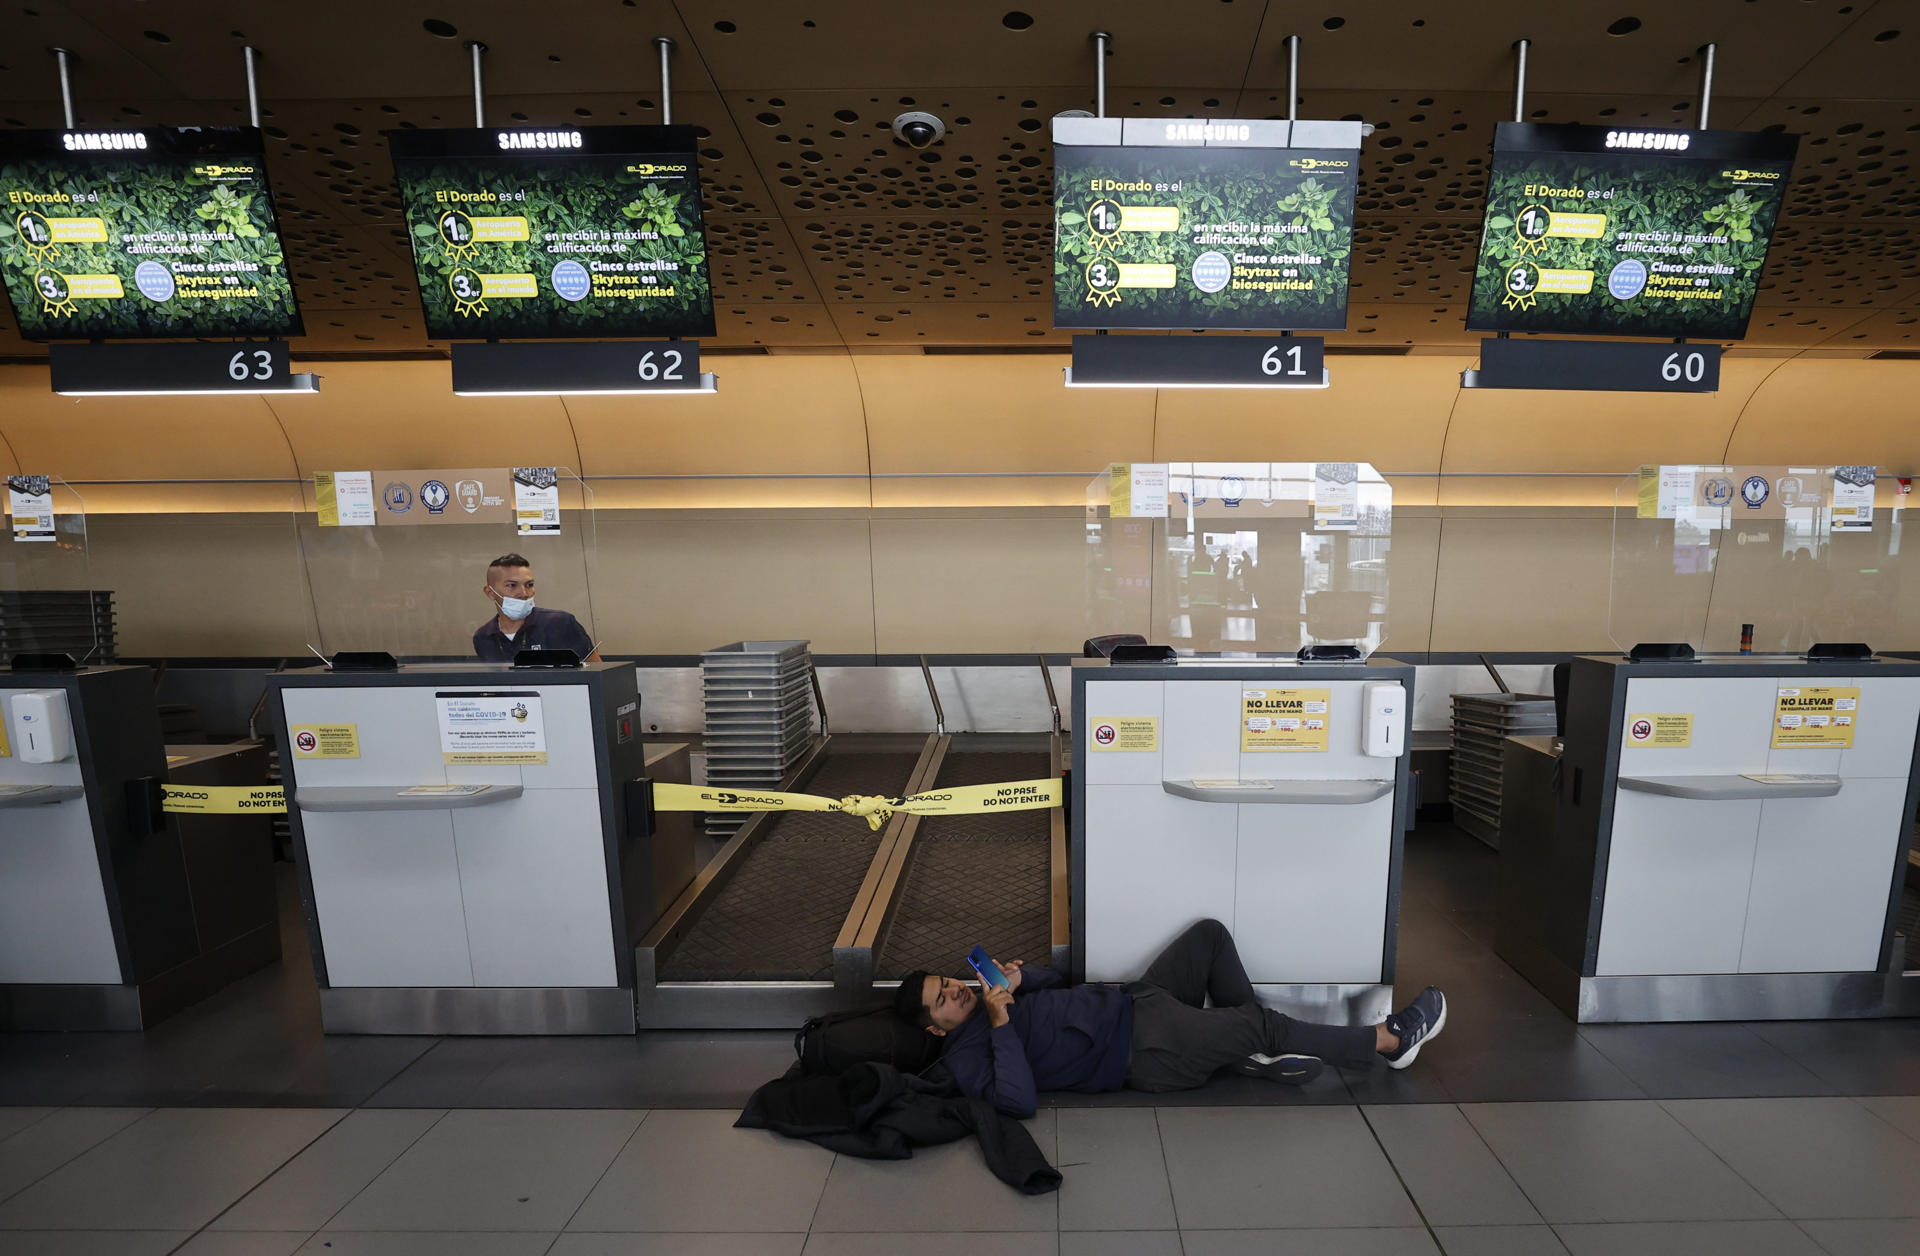 Personas esperan hoy, en el aeropuerto El Dorado, tras el cierre de operaciones de la aerolínea Viva Air, en Bogotá (Colombia). EFE/ Mauricio Dueñas Castañeda